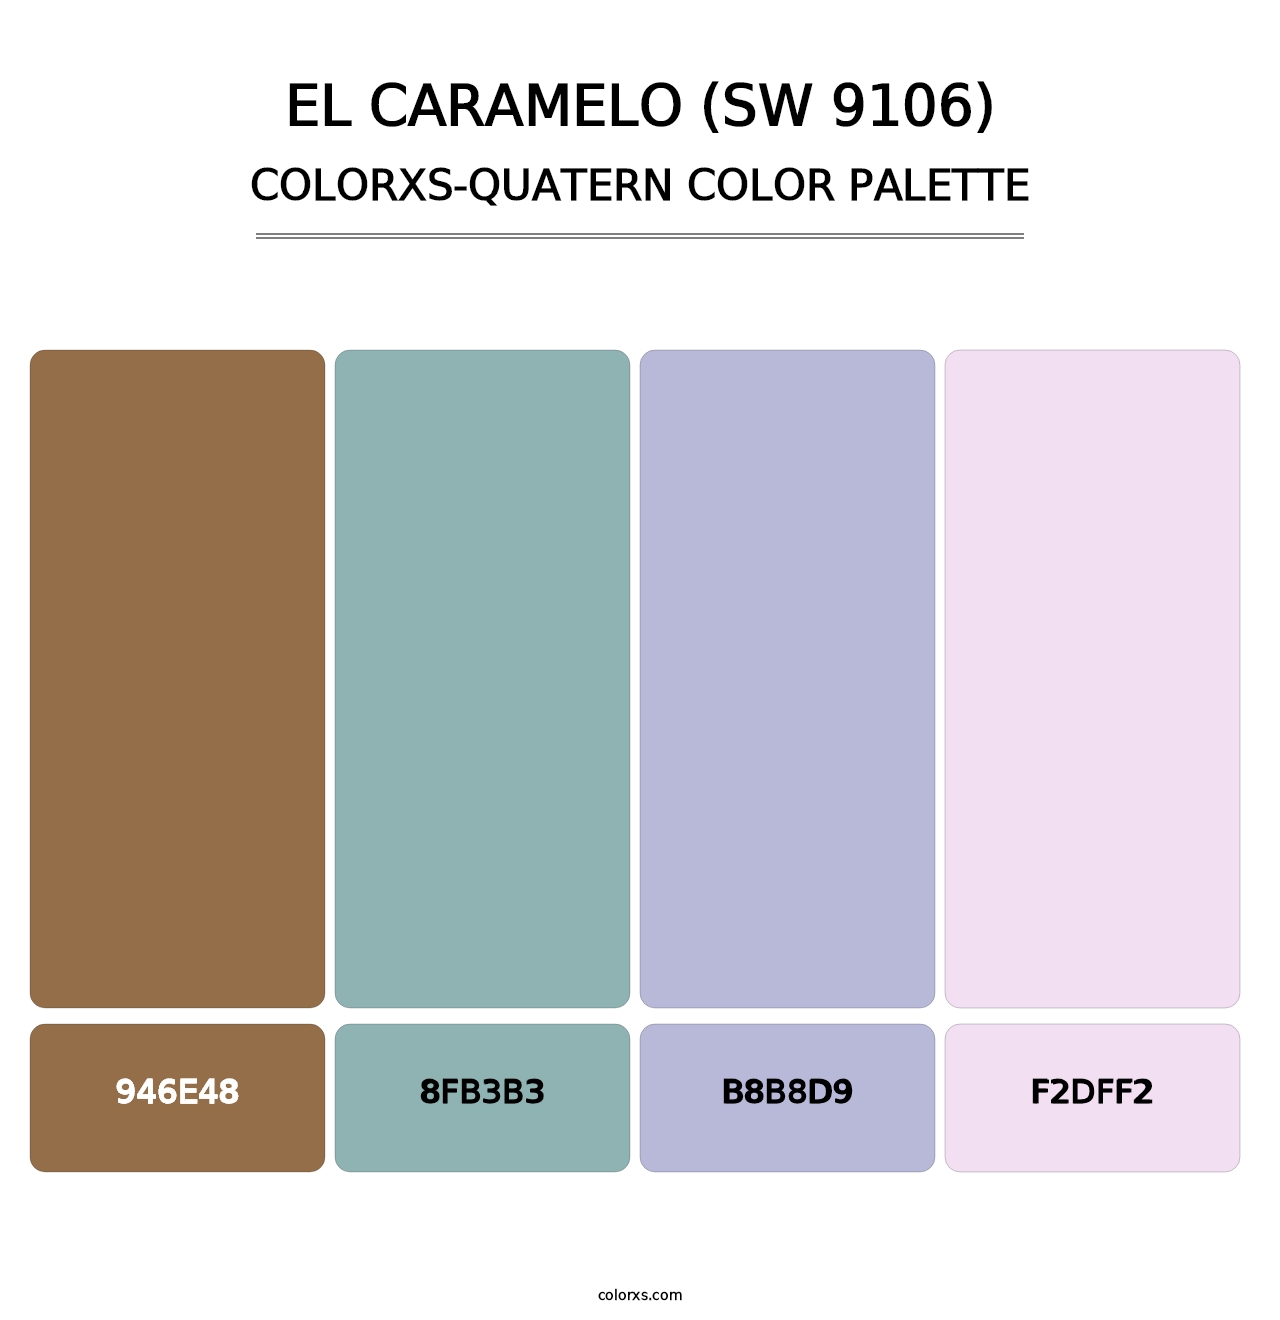 El Caramelo (SW 9106) - Colorxs Quatern Palette